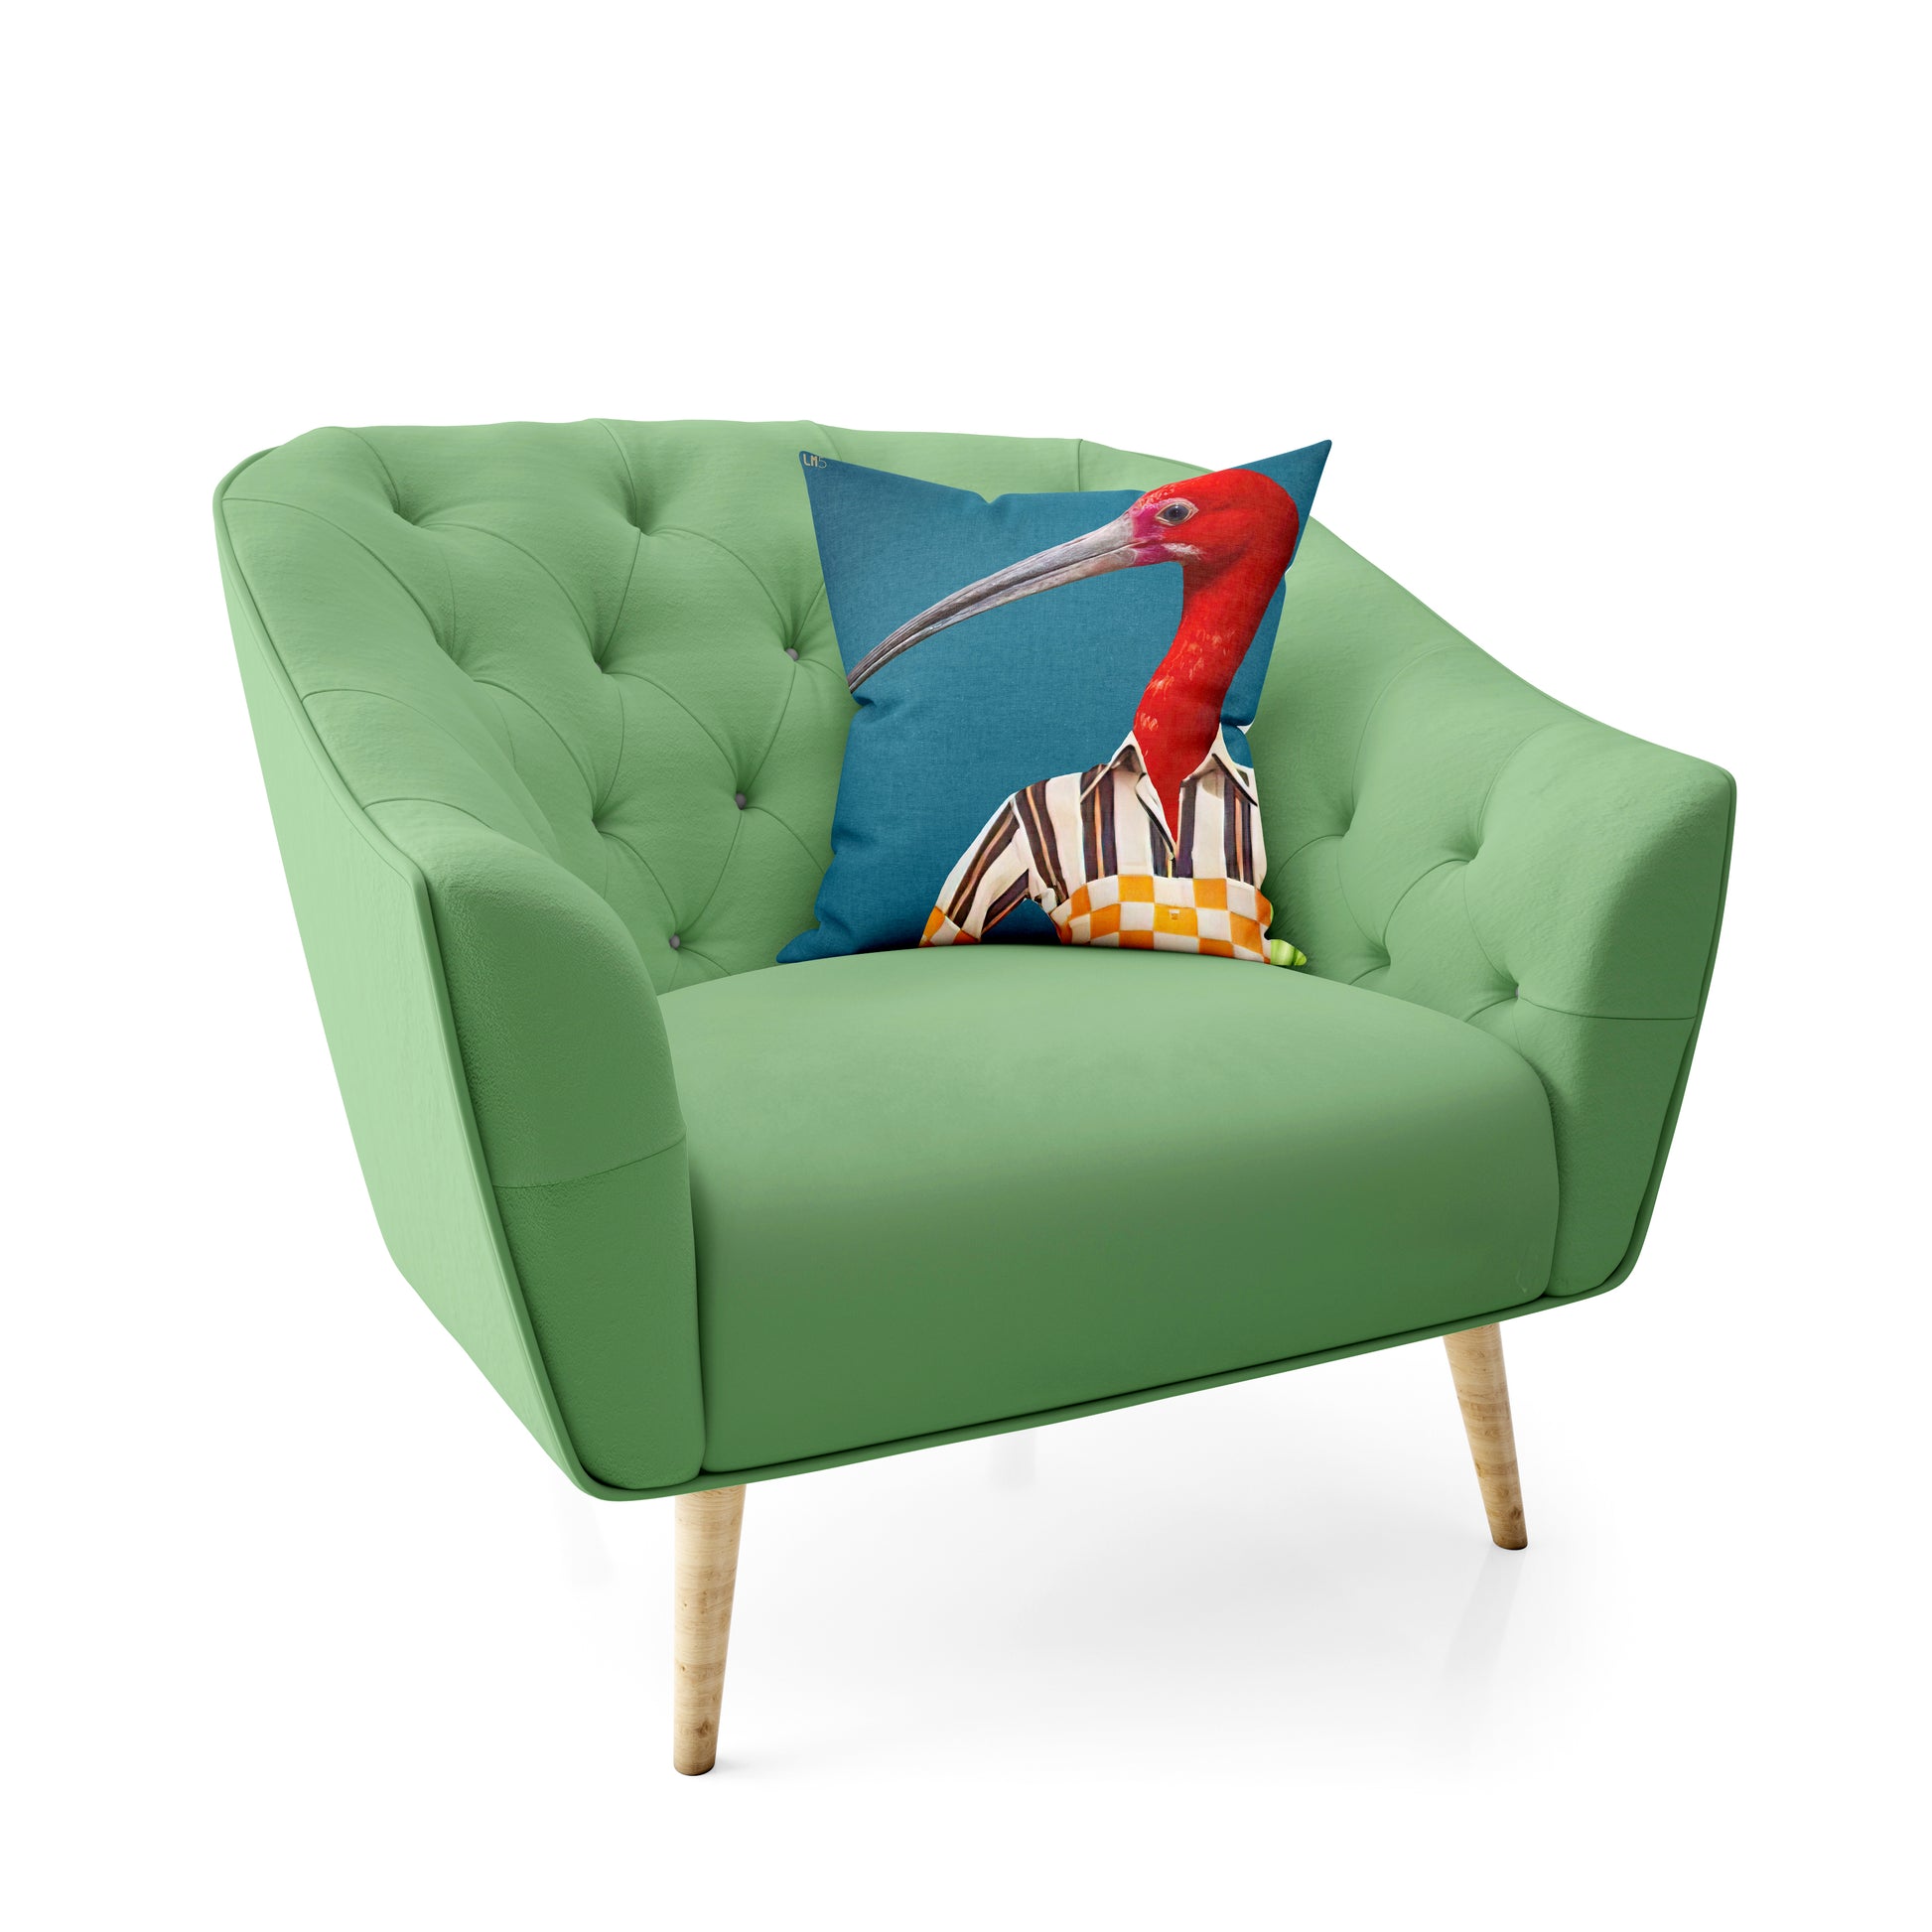  un coussin bien installé sur un fauteuil vert  avec une décoration originale 